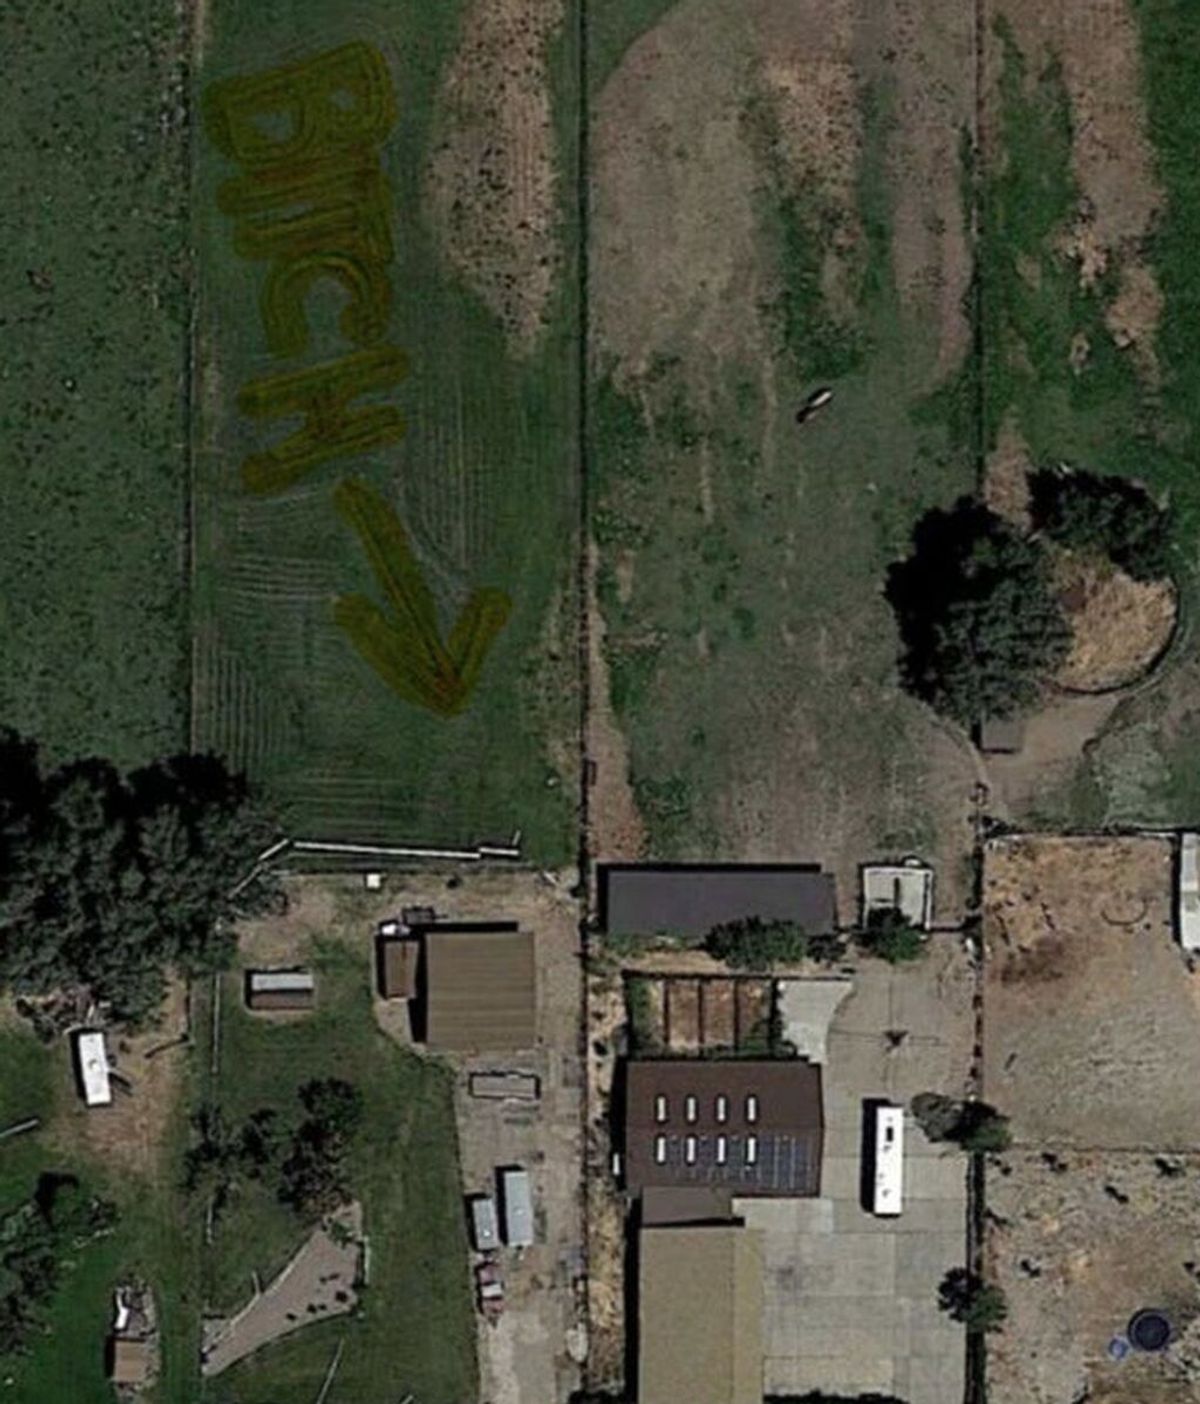 Google Earth descubre un insulto entre vecinos escrito sobre el césped de un jardín